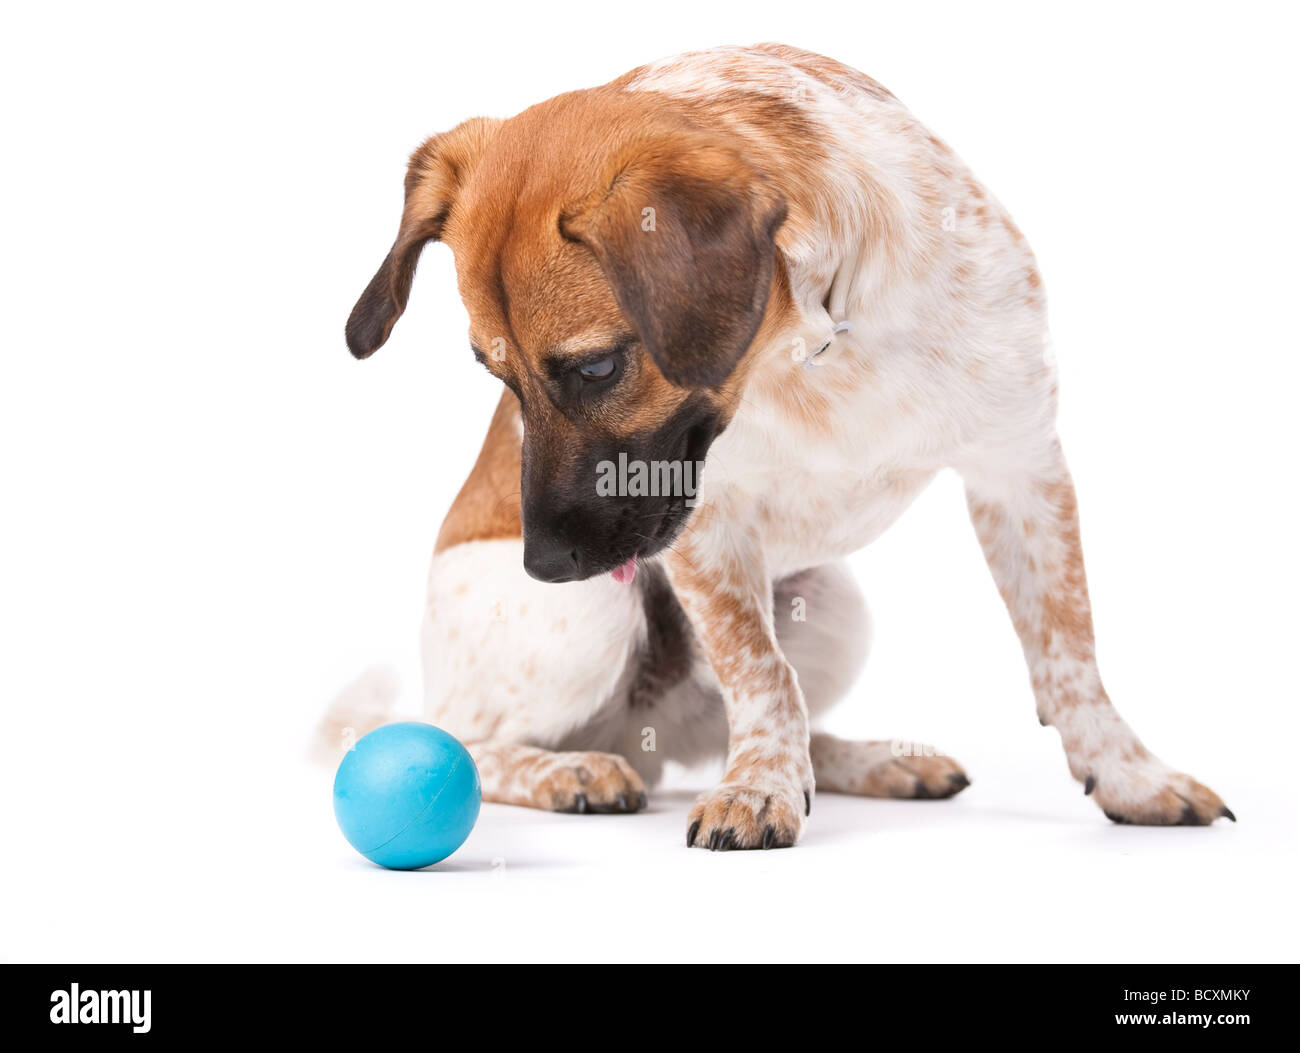 Petit chien blanc et brun en se concentrant fortement sur une boule bleue Studio shot isolated on white Banque D'Images